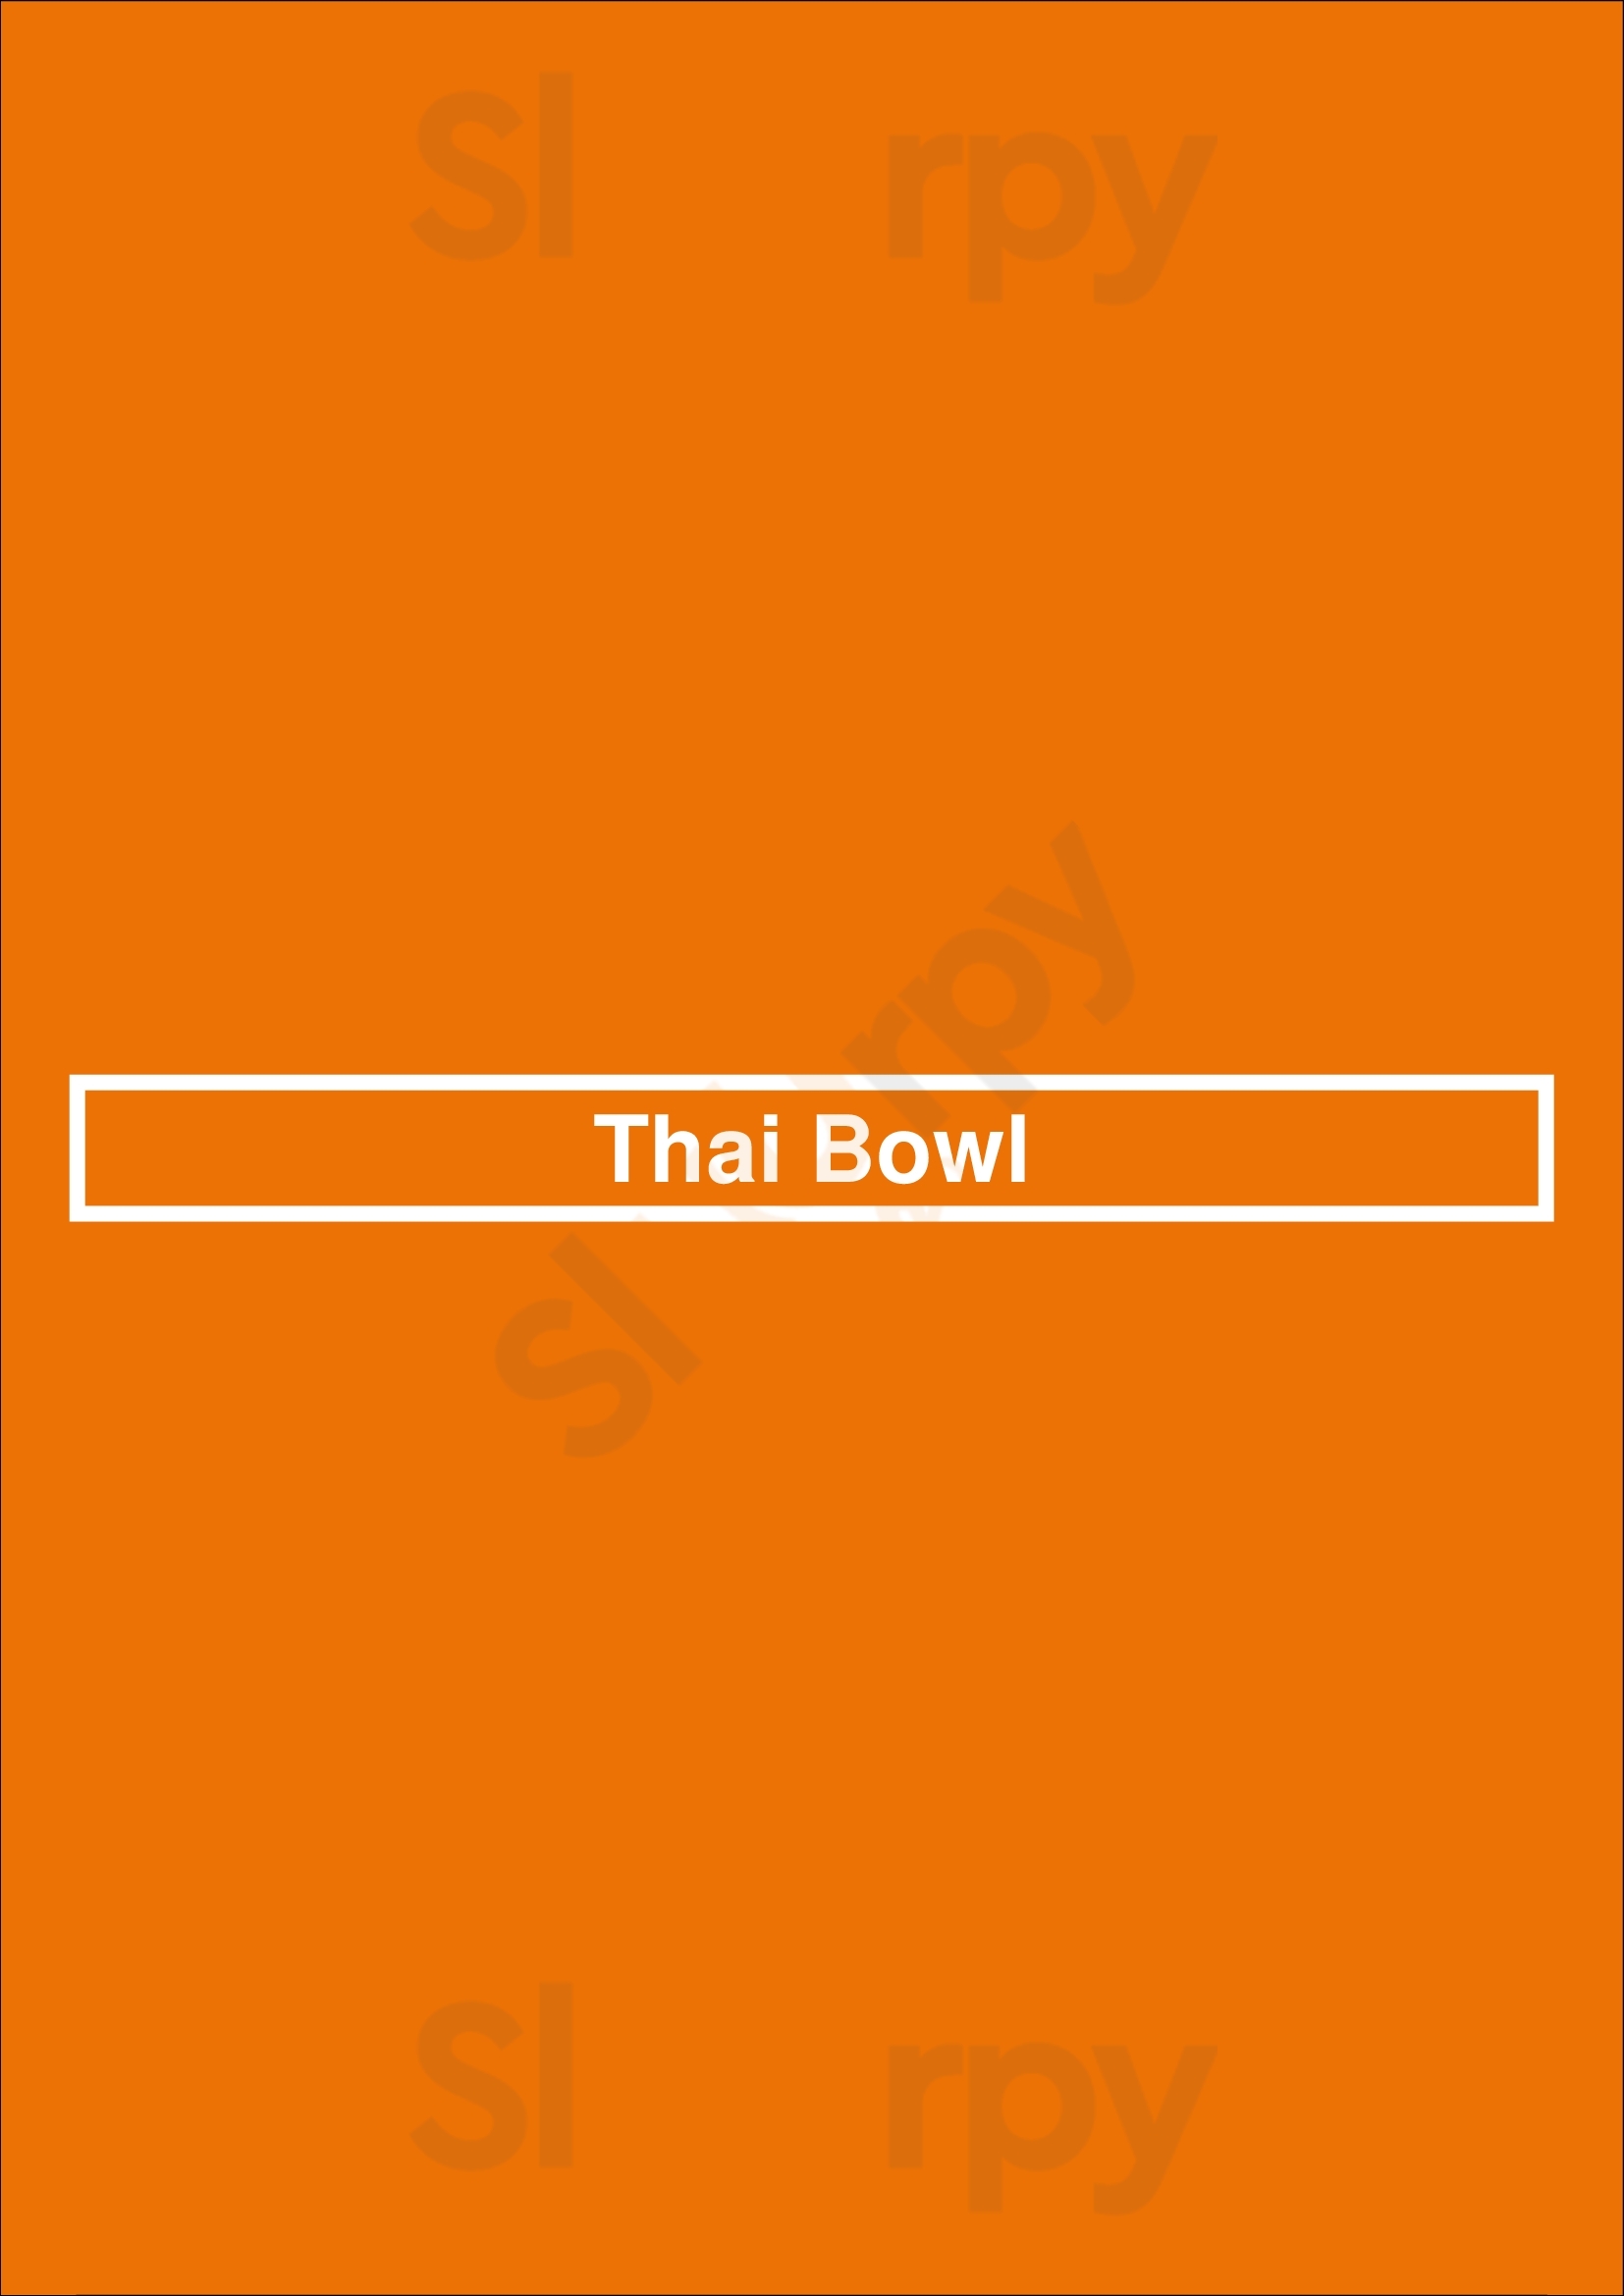 Thai Bowl Edinburgh Menu - 1